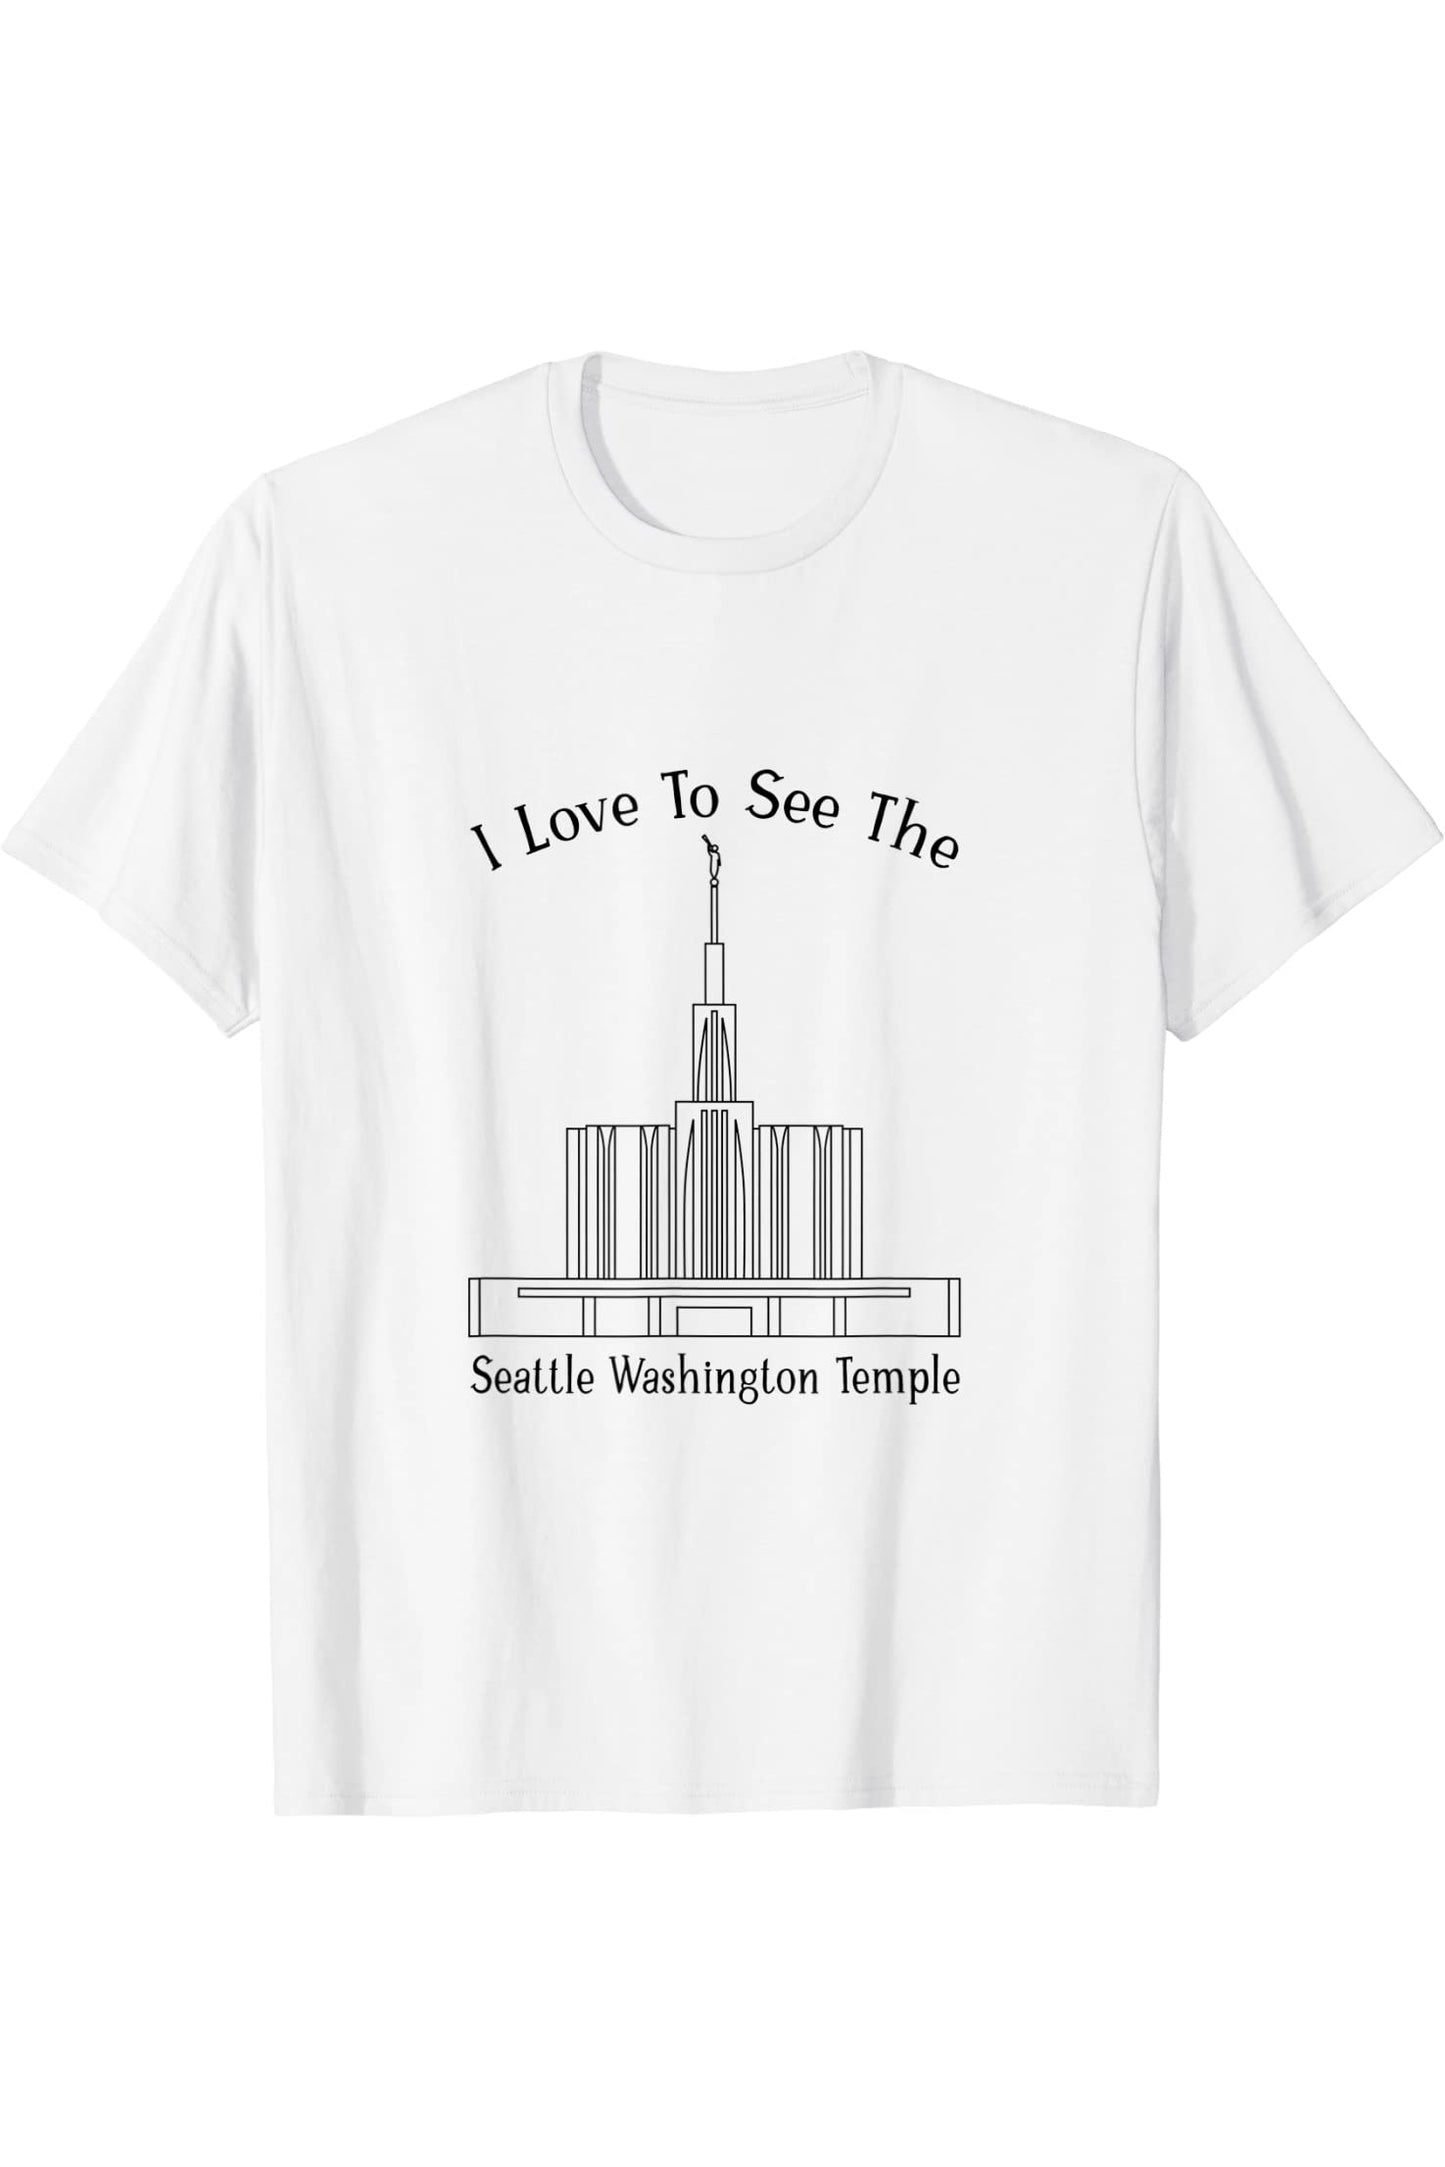 Seattle Washington Temple T-Shirt - Happy Style (English) US